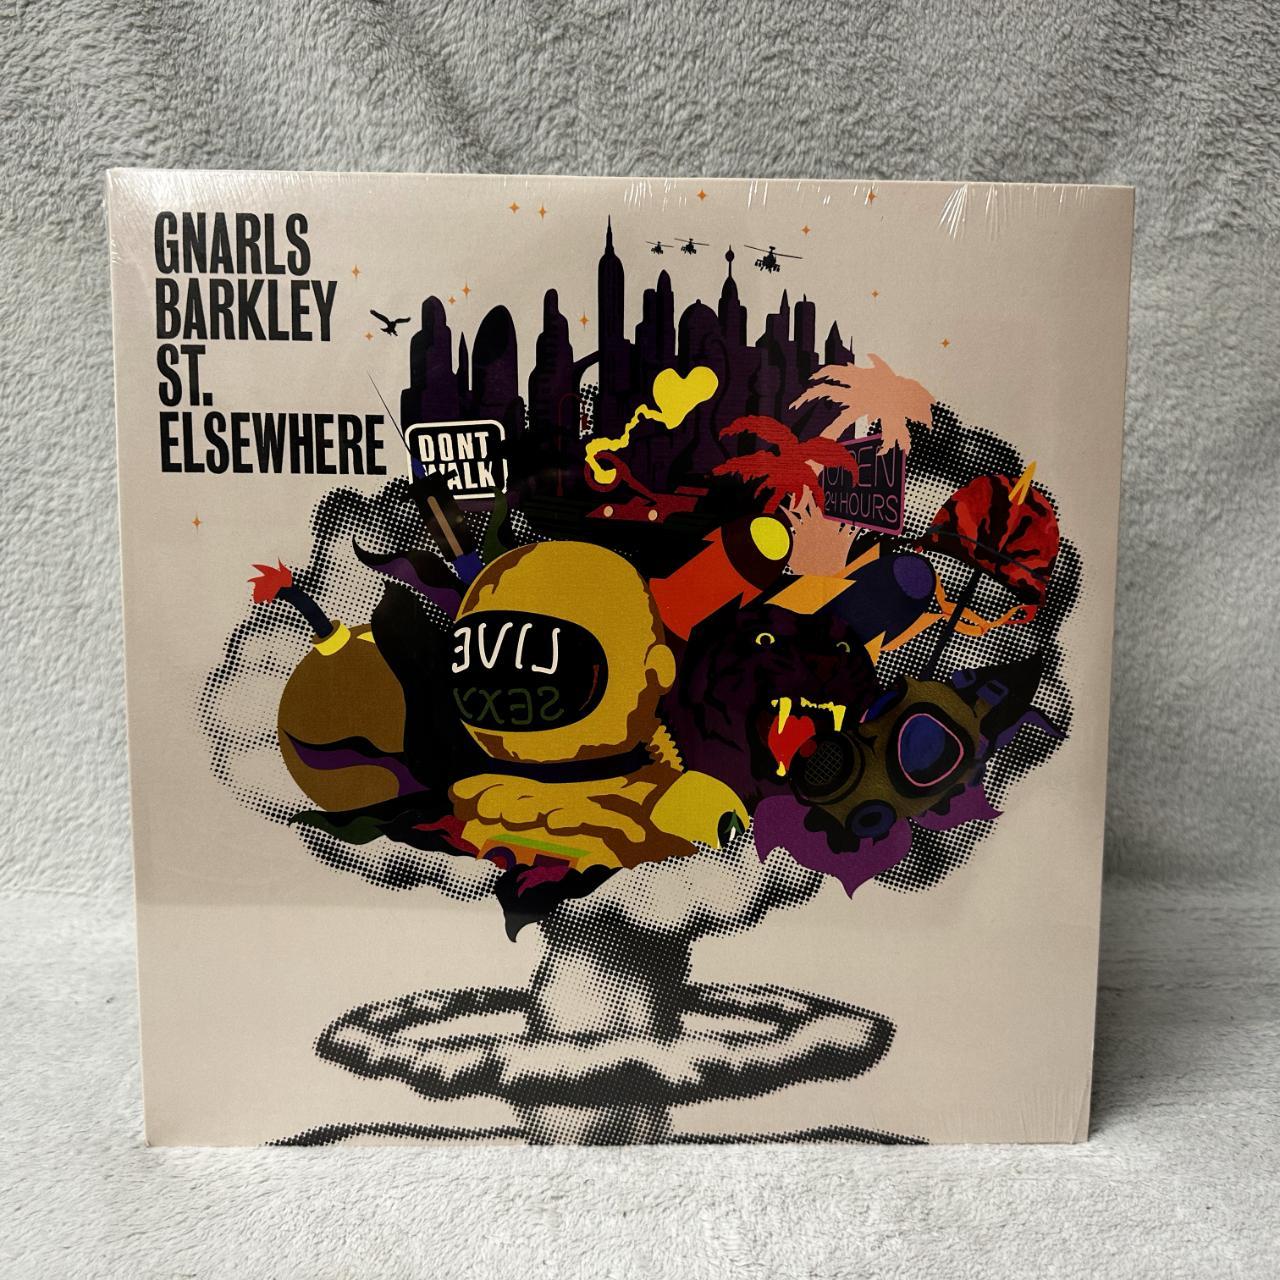  Elsewhere: CDs & Vinyl